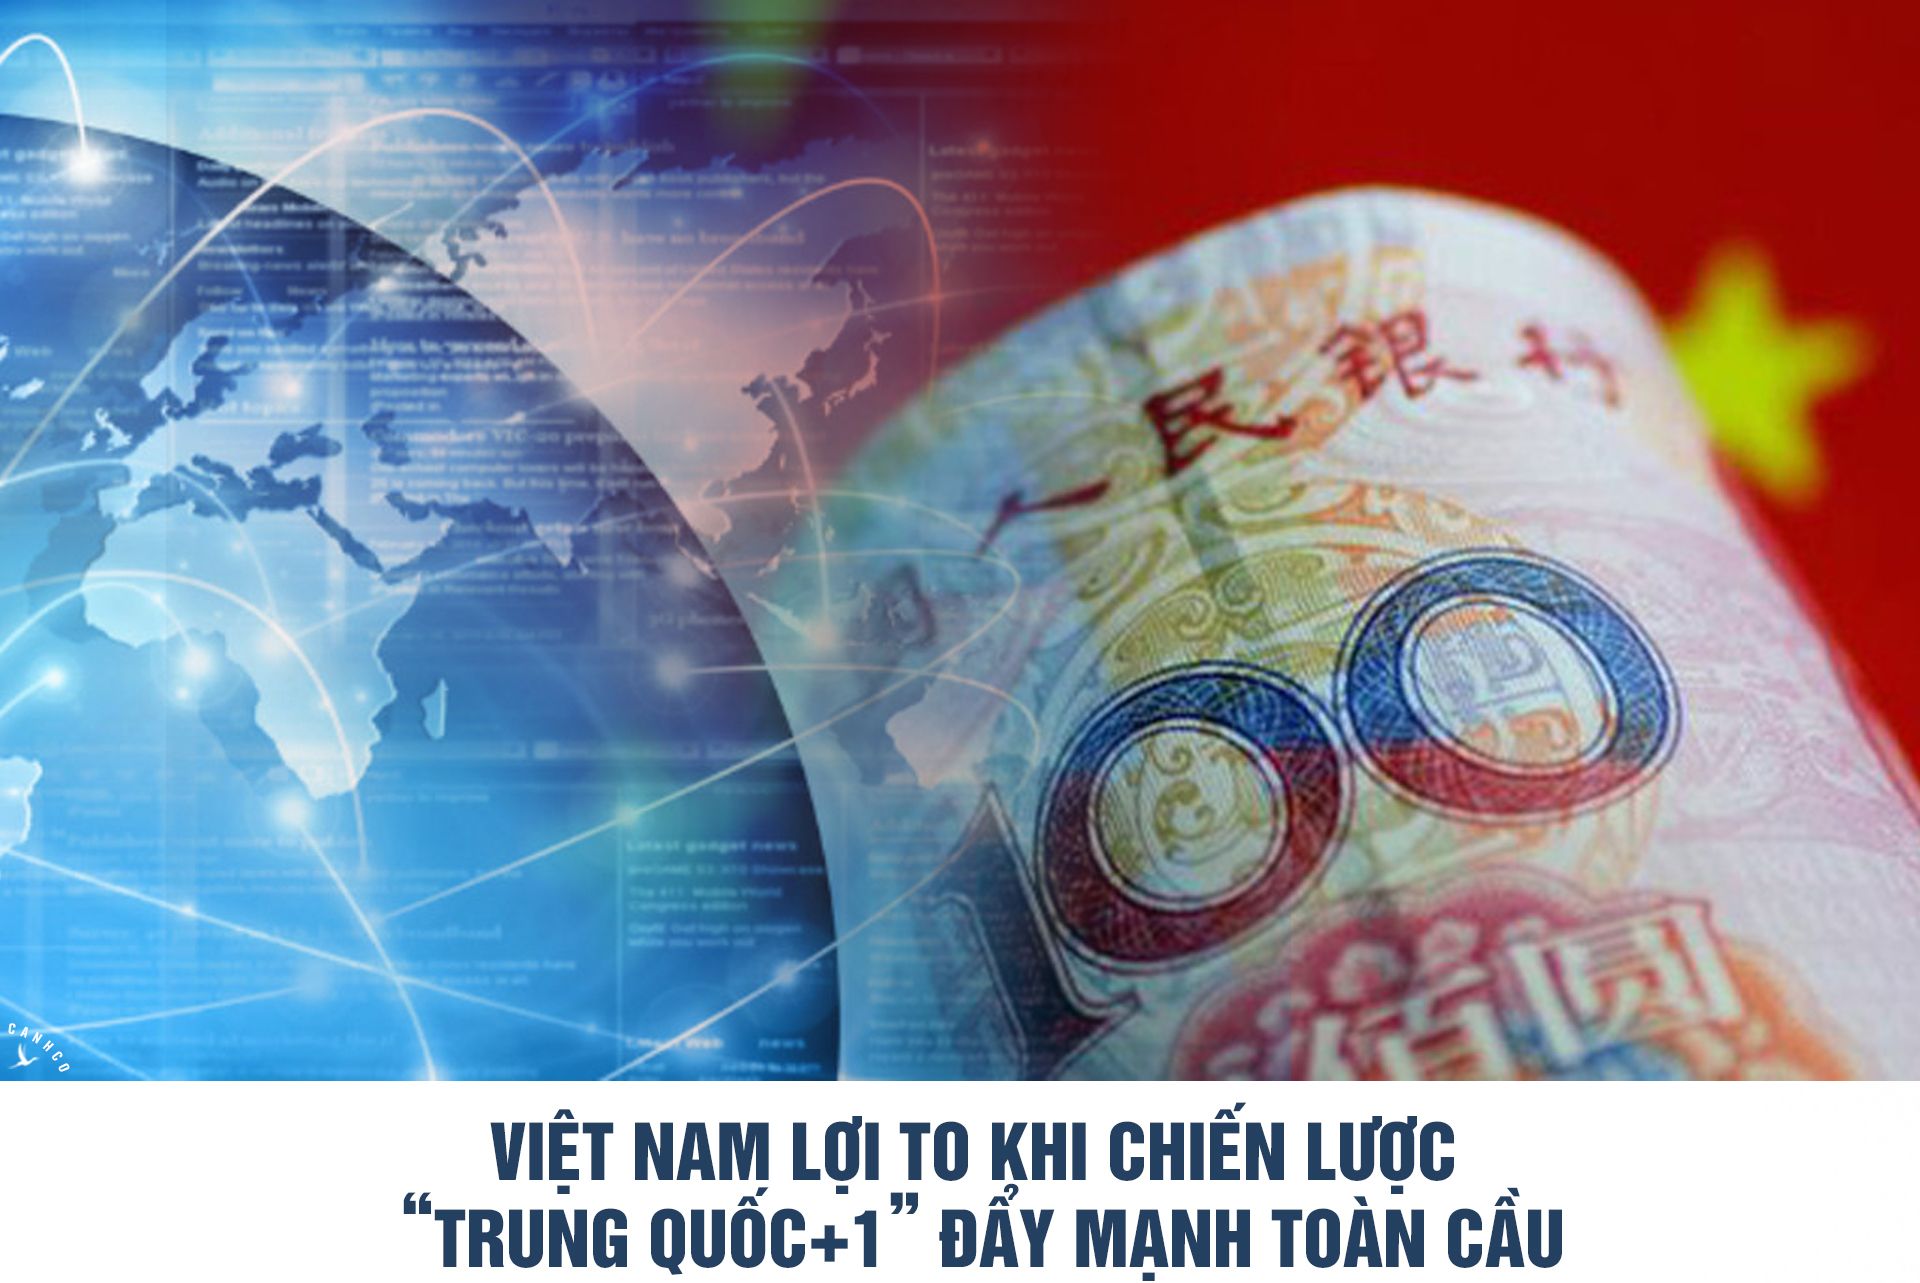 Việt Nam lợi to khi chiến lược “Trung Quốc+1” đẩy mạnh toàn cầu